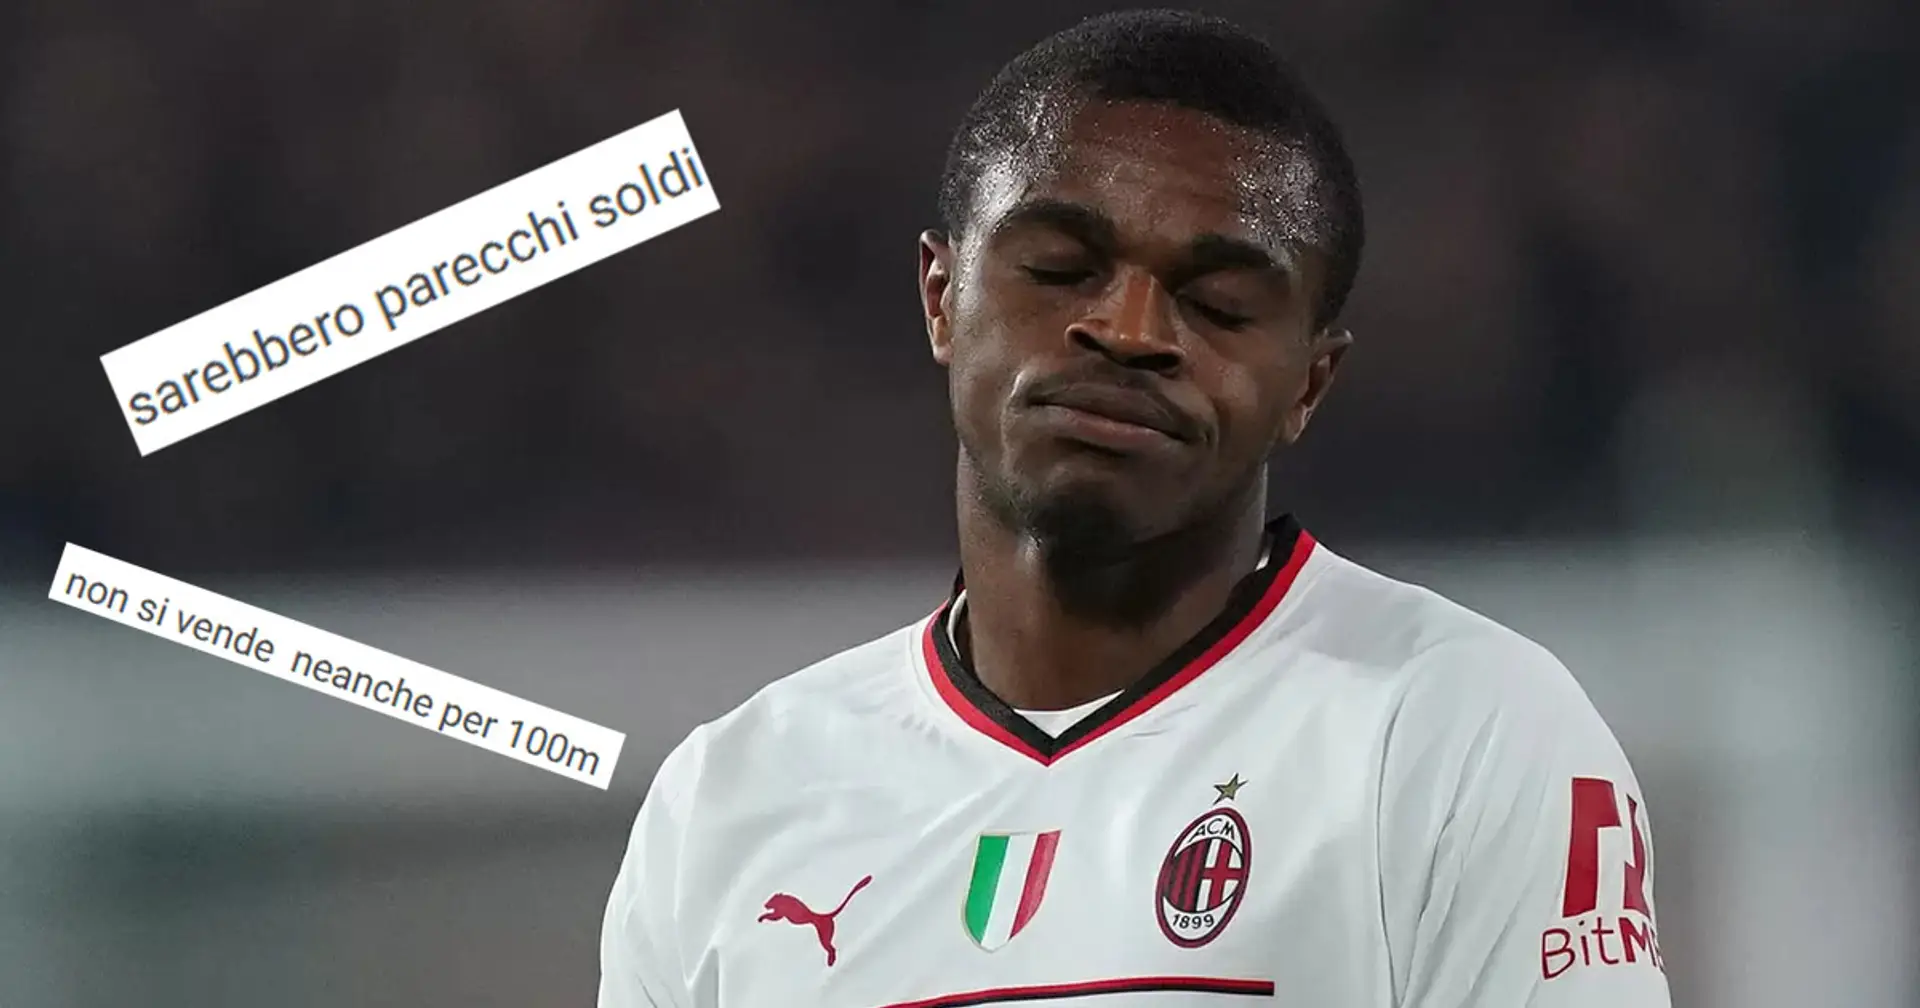 Da "Sarebbero parecchi soldi" a "Non si vende": tifosi del Milan divisi sull'offerta del Tottenham per Kalulu